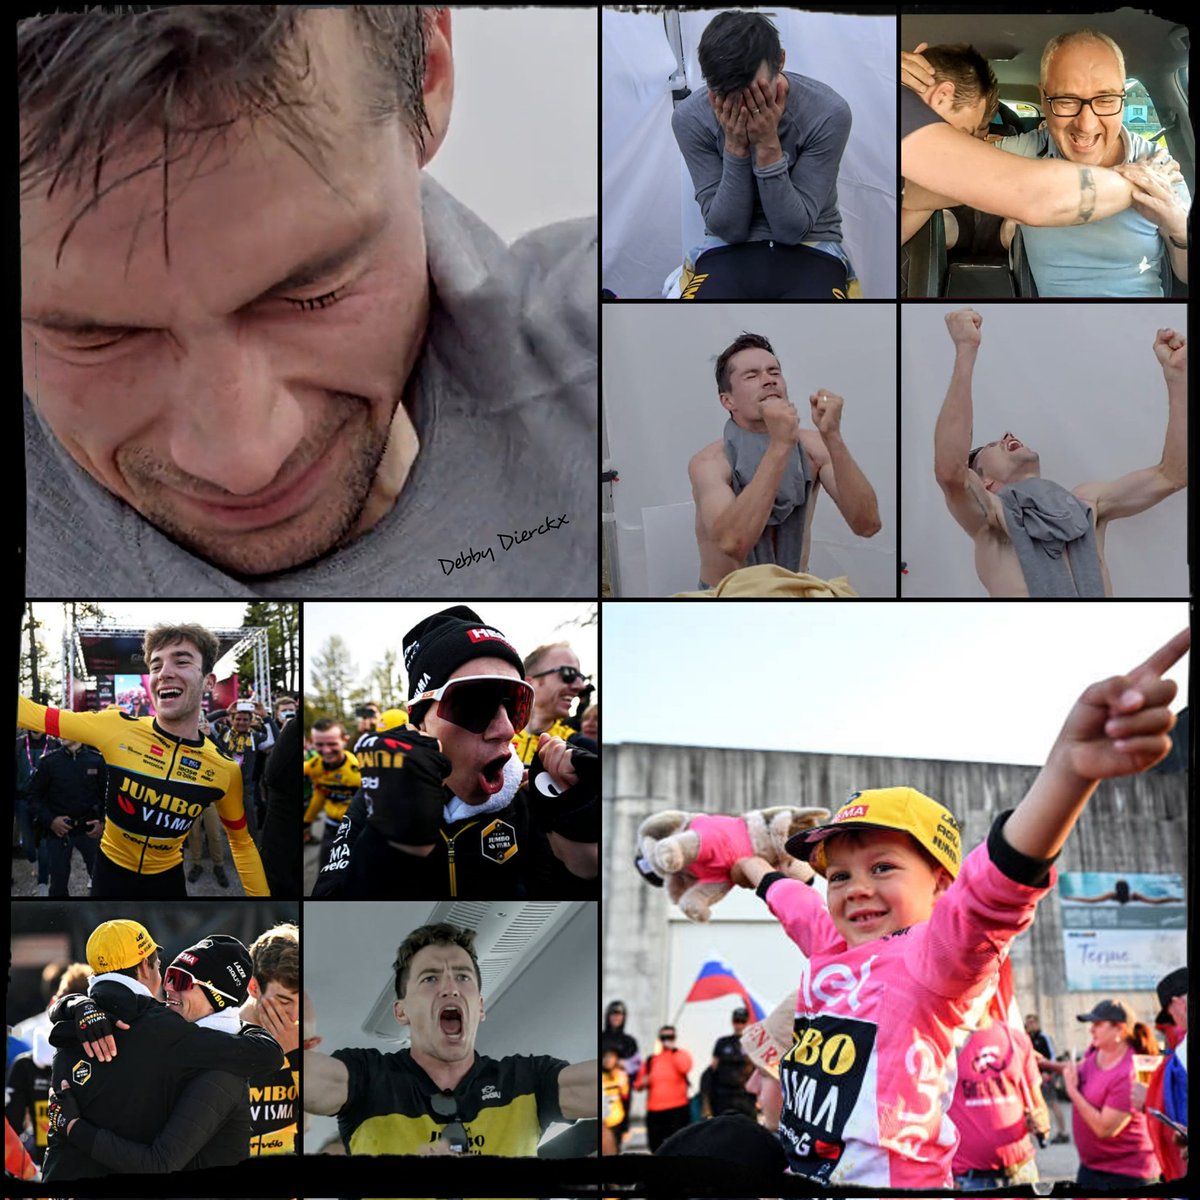 About yesterday 😃.
Emotions 🥹.
Happy 💞.
Proud fan 🫶🥰.
#rogla #roglic #primozroglic #jumbovisma #Giro #samenwinnen